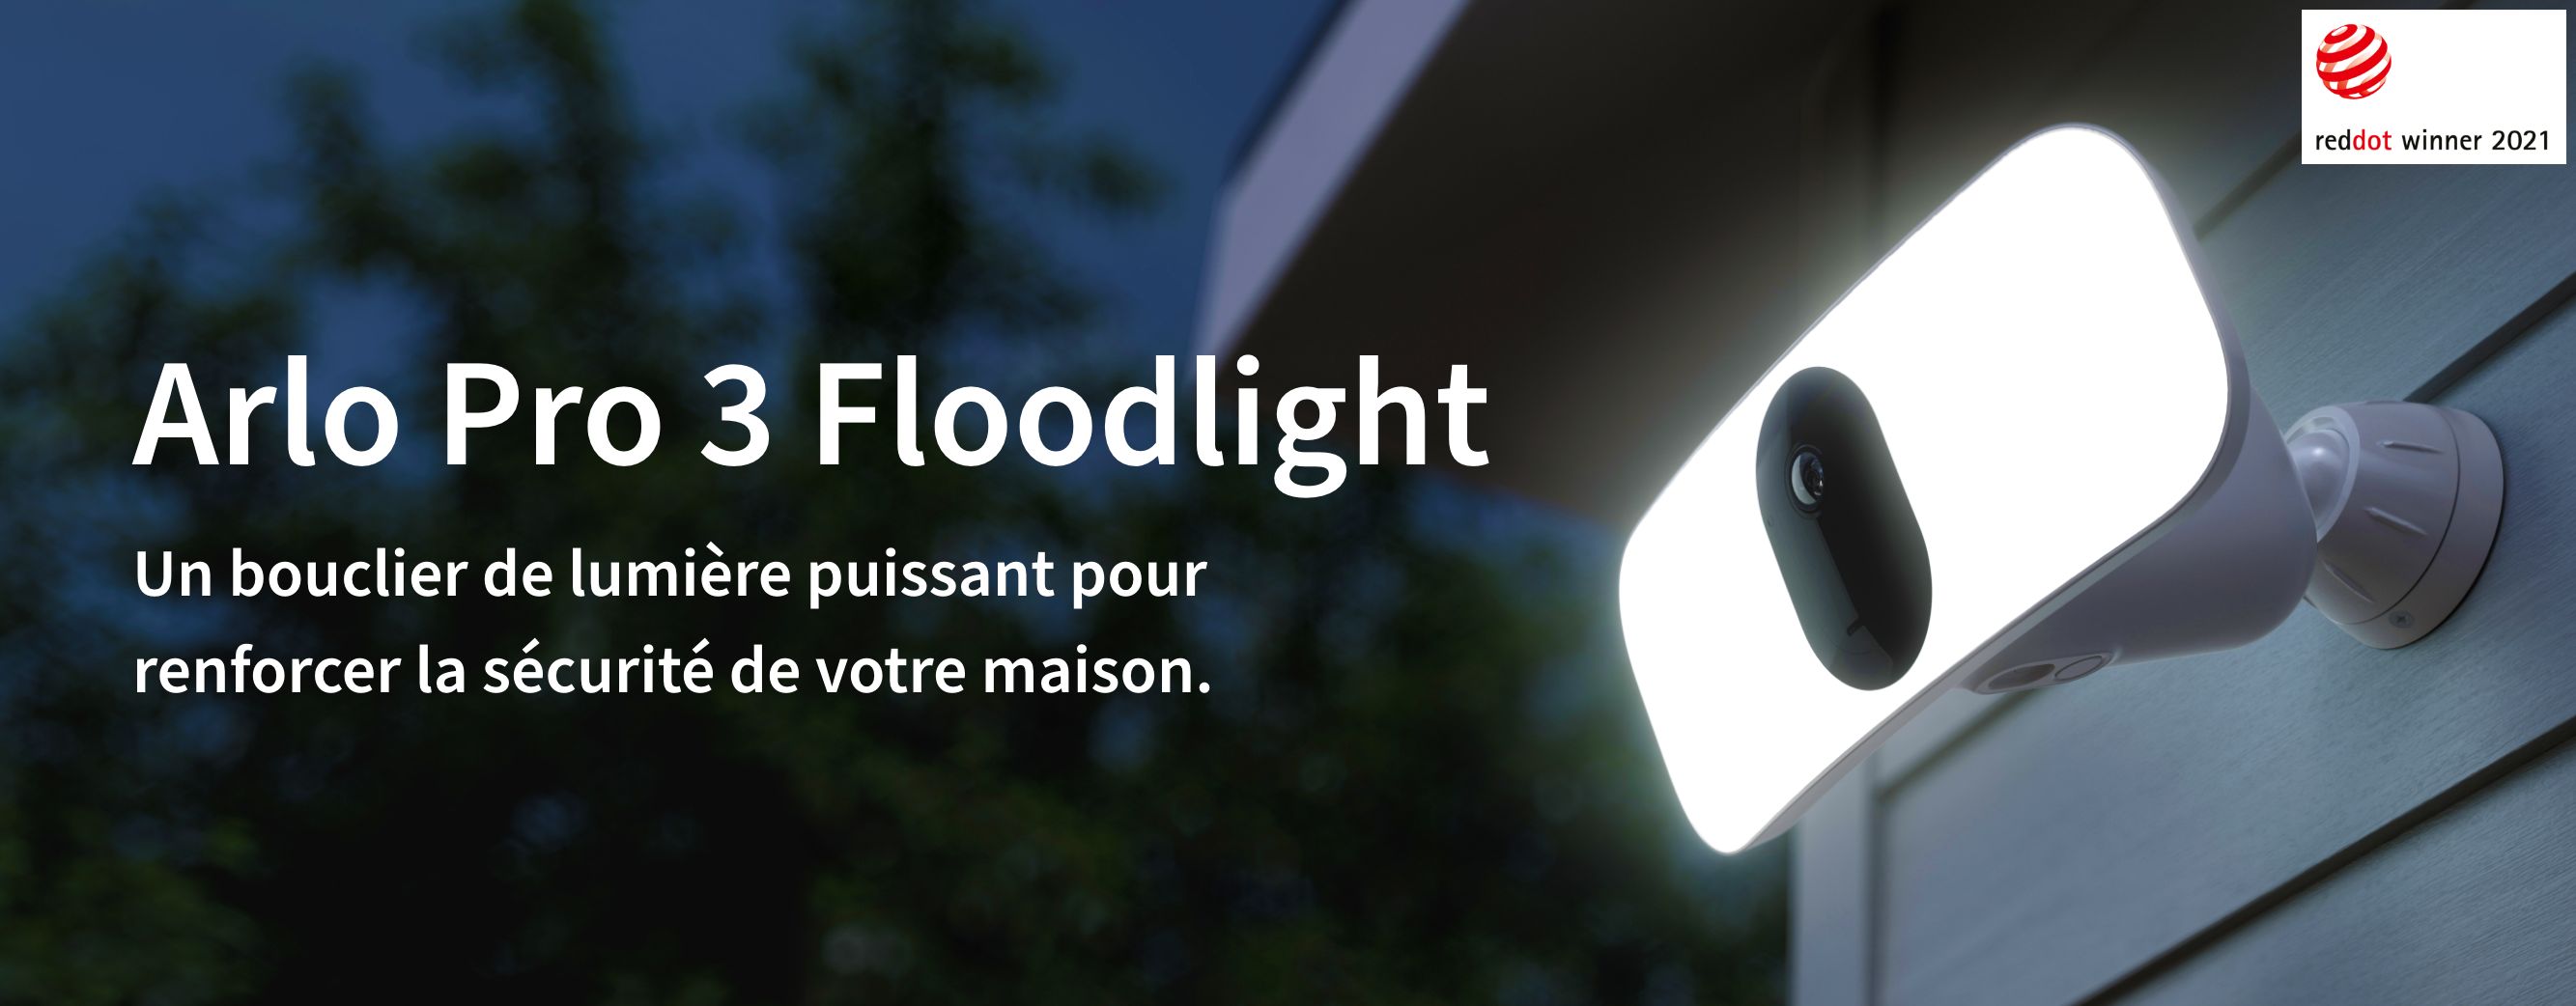 Une caméra de sécurité en lumière de l'inondation Arlo Pro 3 attachée à un mur à l'extérieur brille un puissant bouclier de lumière la nuit - Reddot Winner 2021